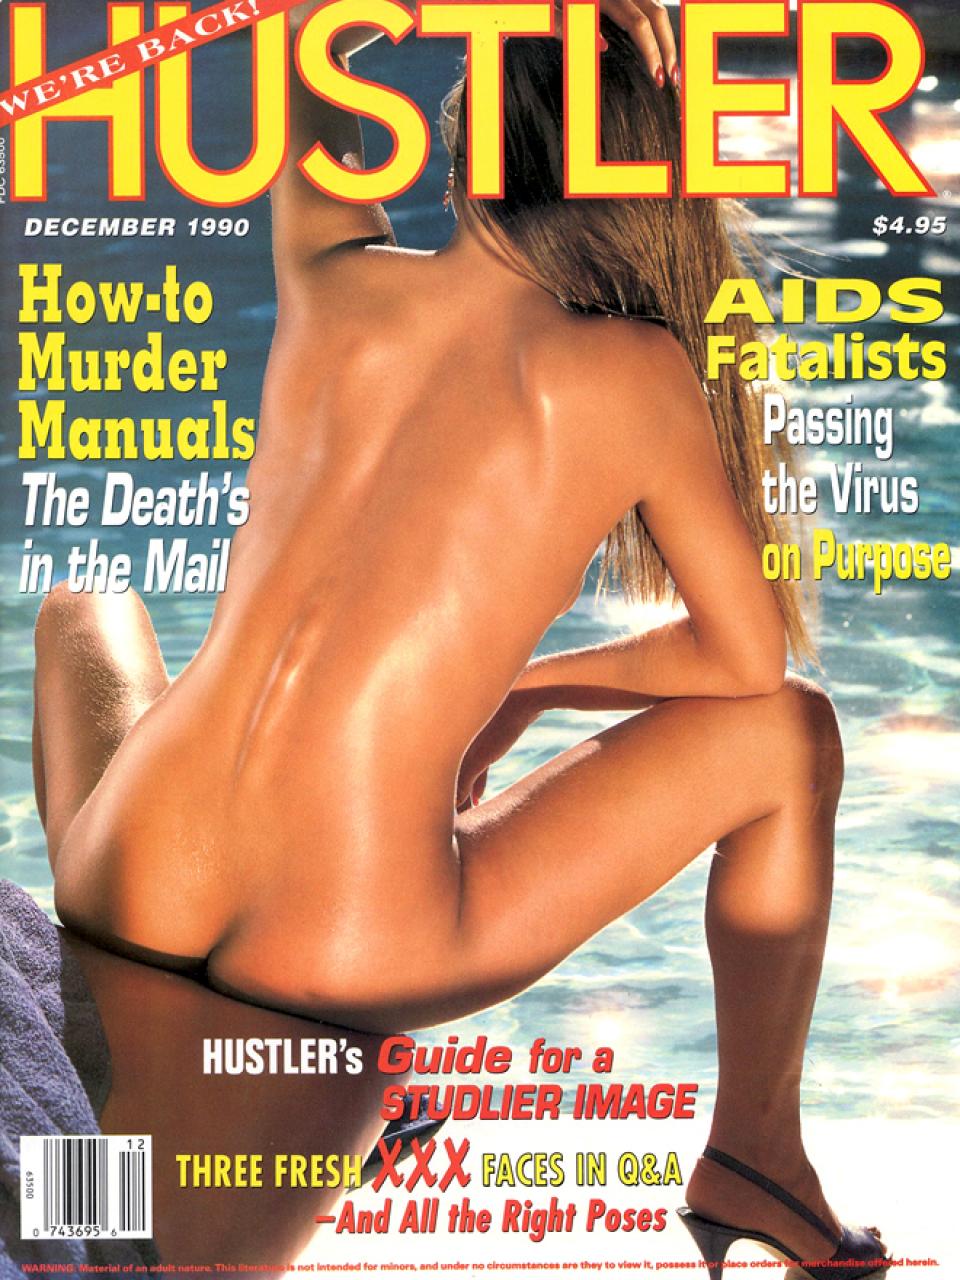 December 1990 - HUSTLER Magazine.